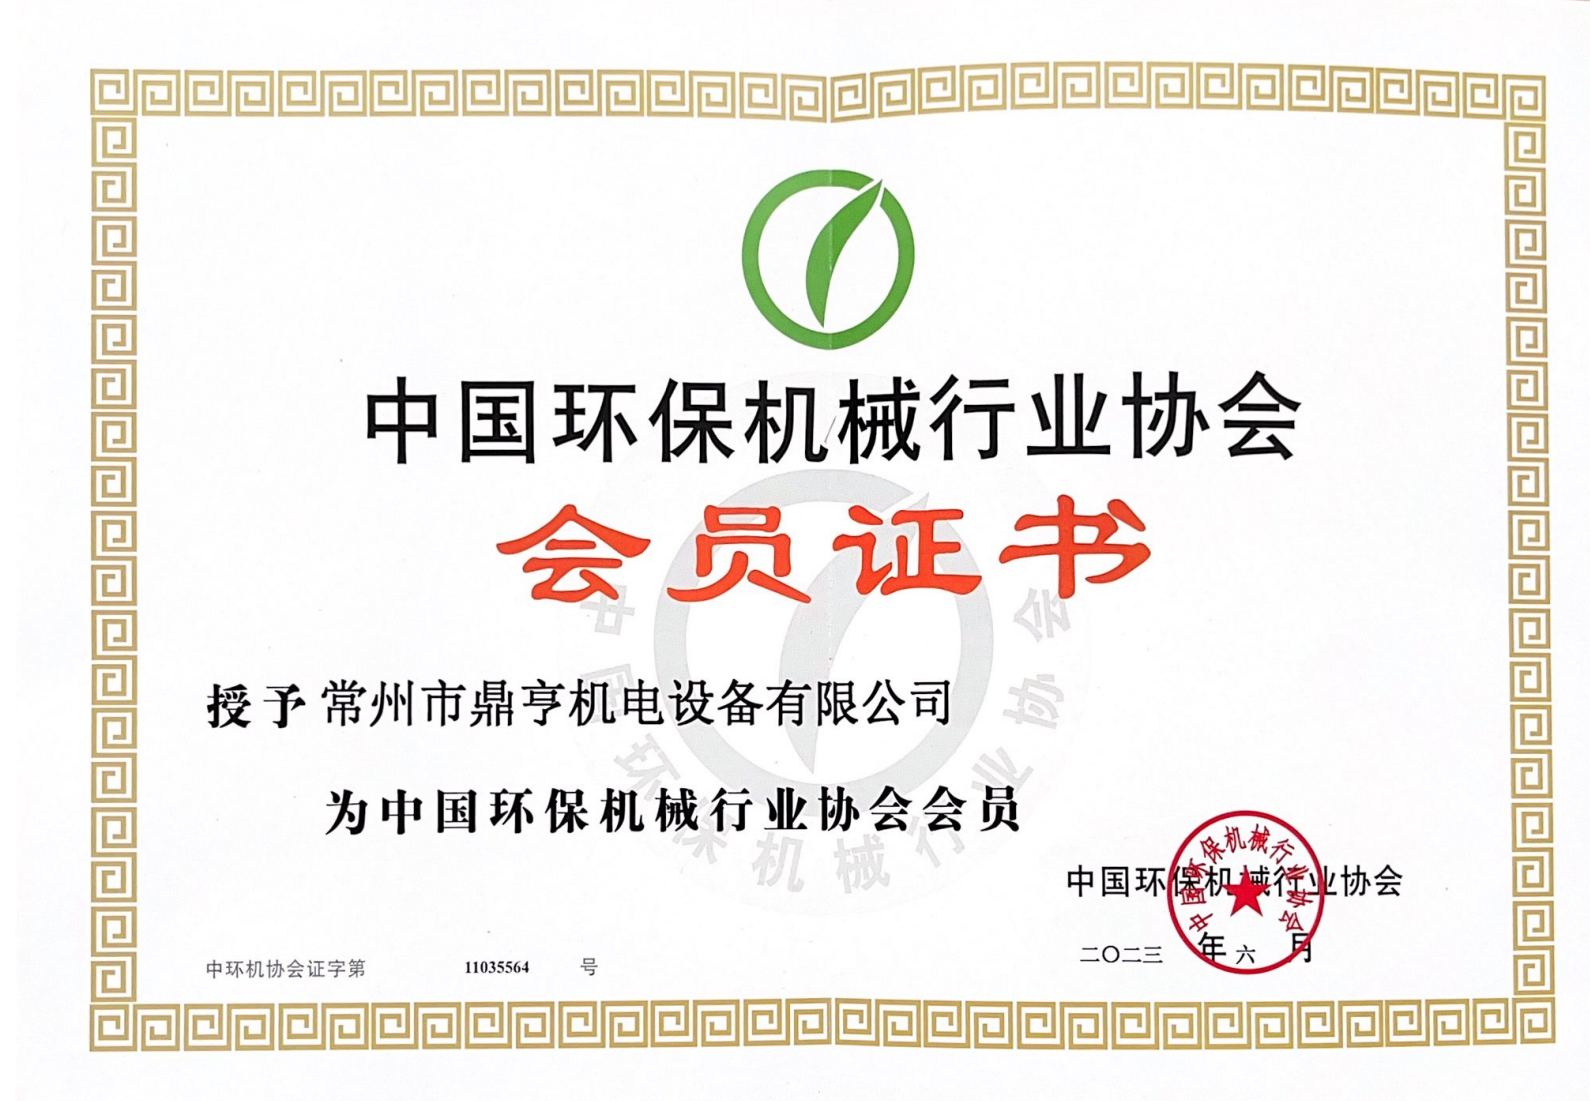 中国环保机械行业协会